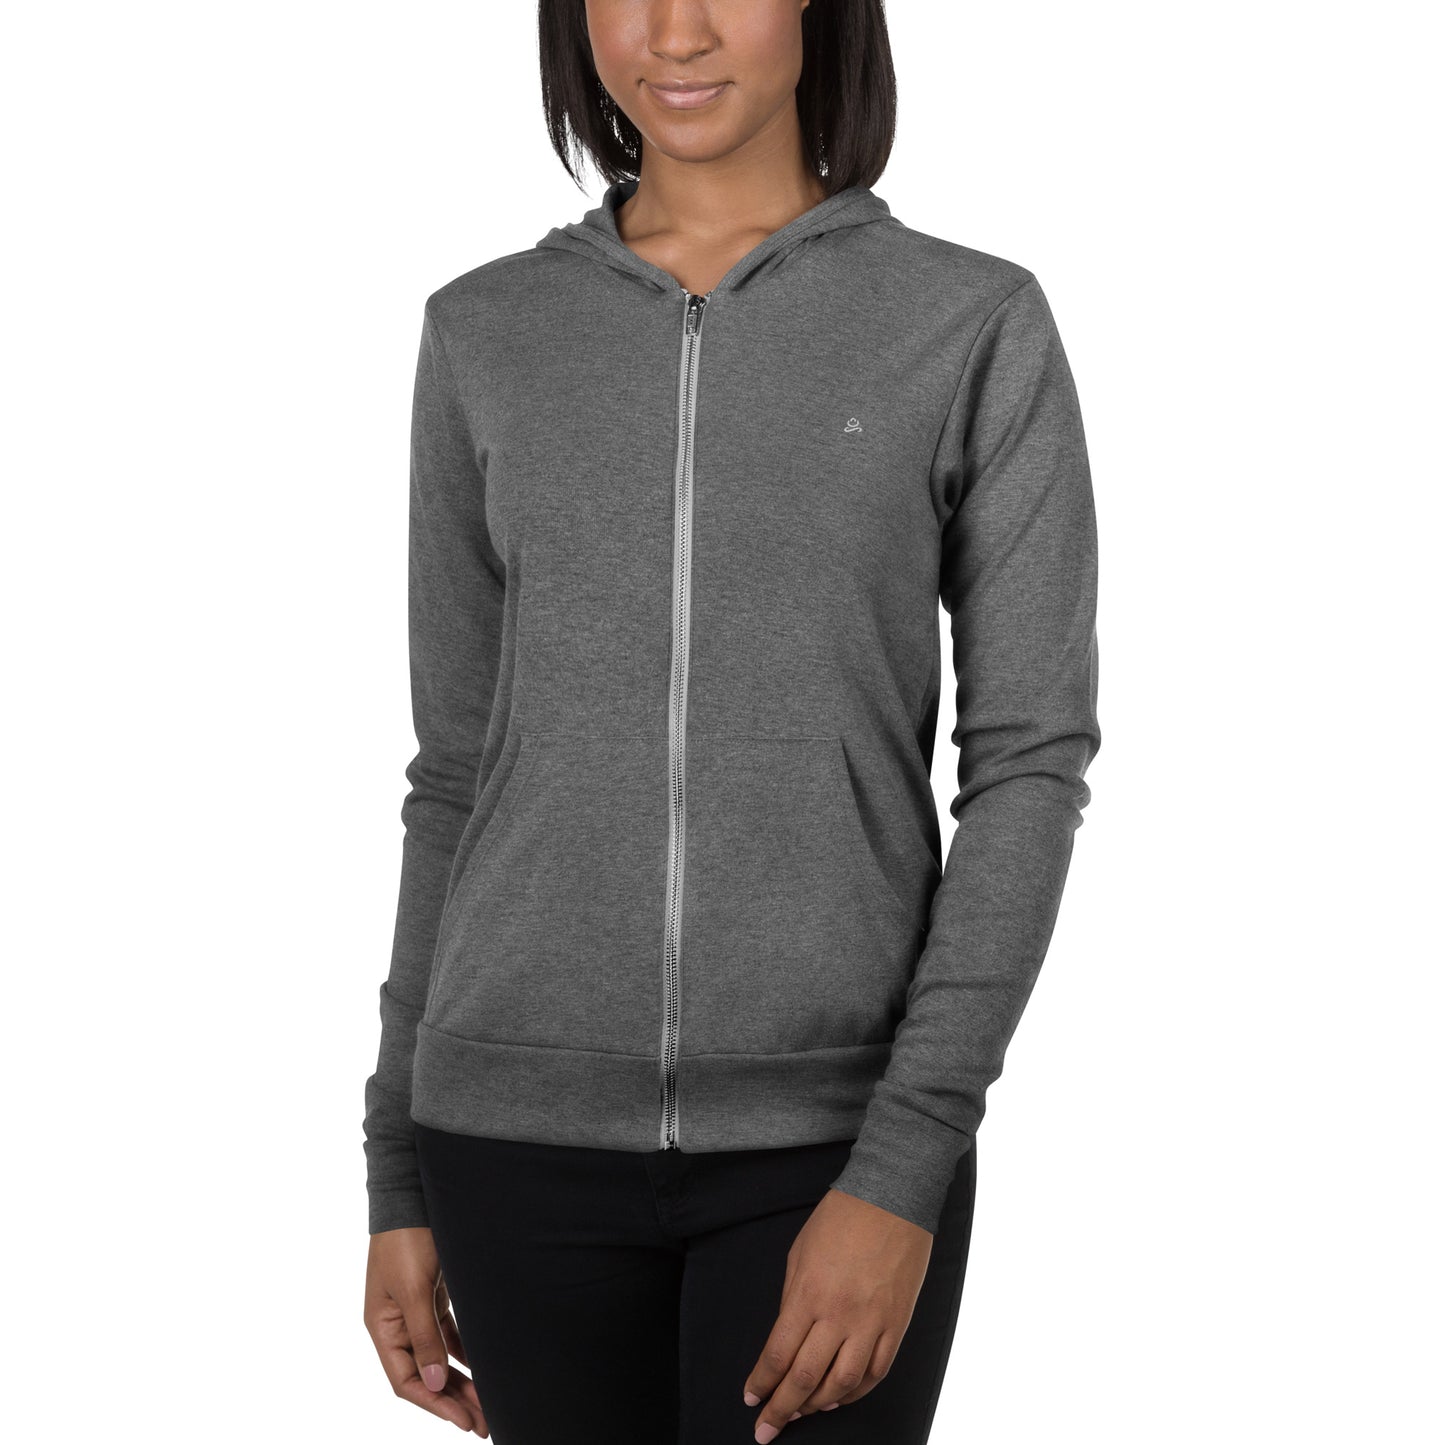 Slim fit ultra-light zip hoodie